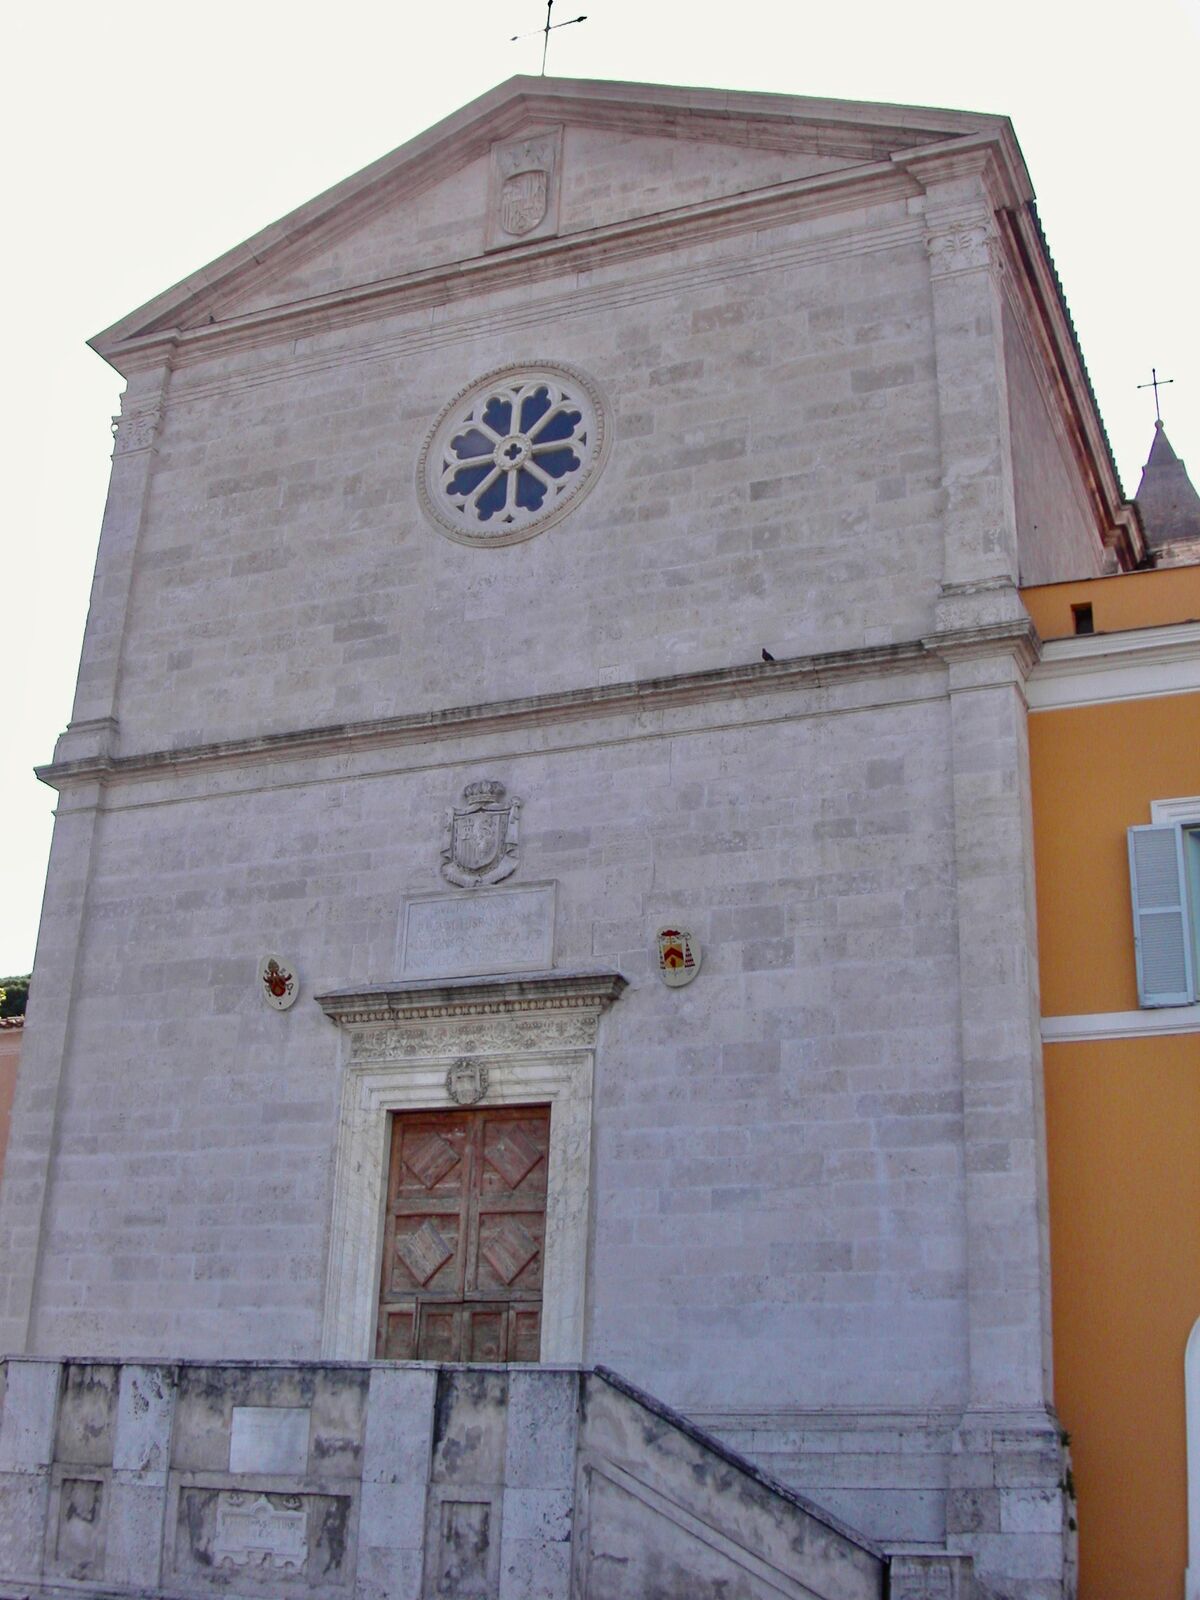 San Pietro in Montorio | Churches of Rome Wiki | Fandom